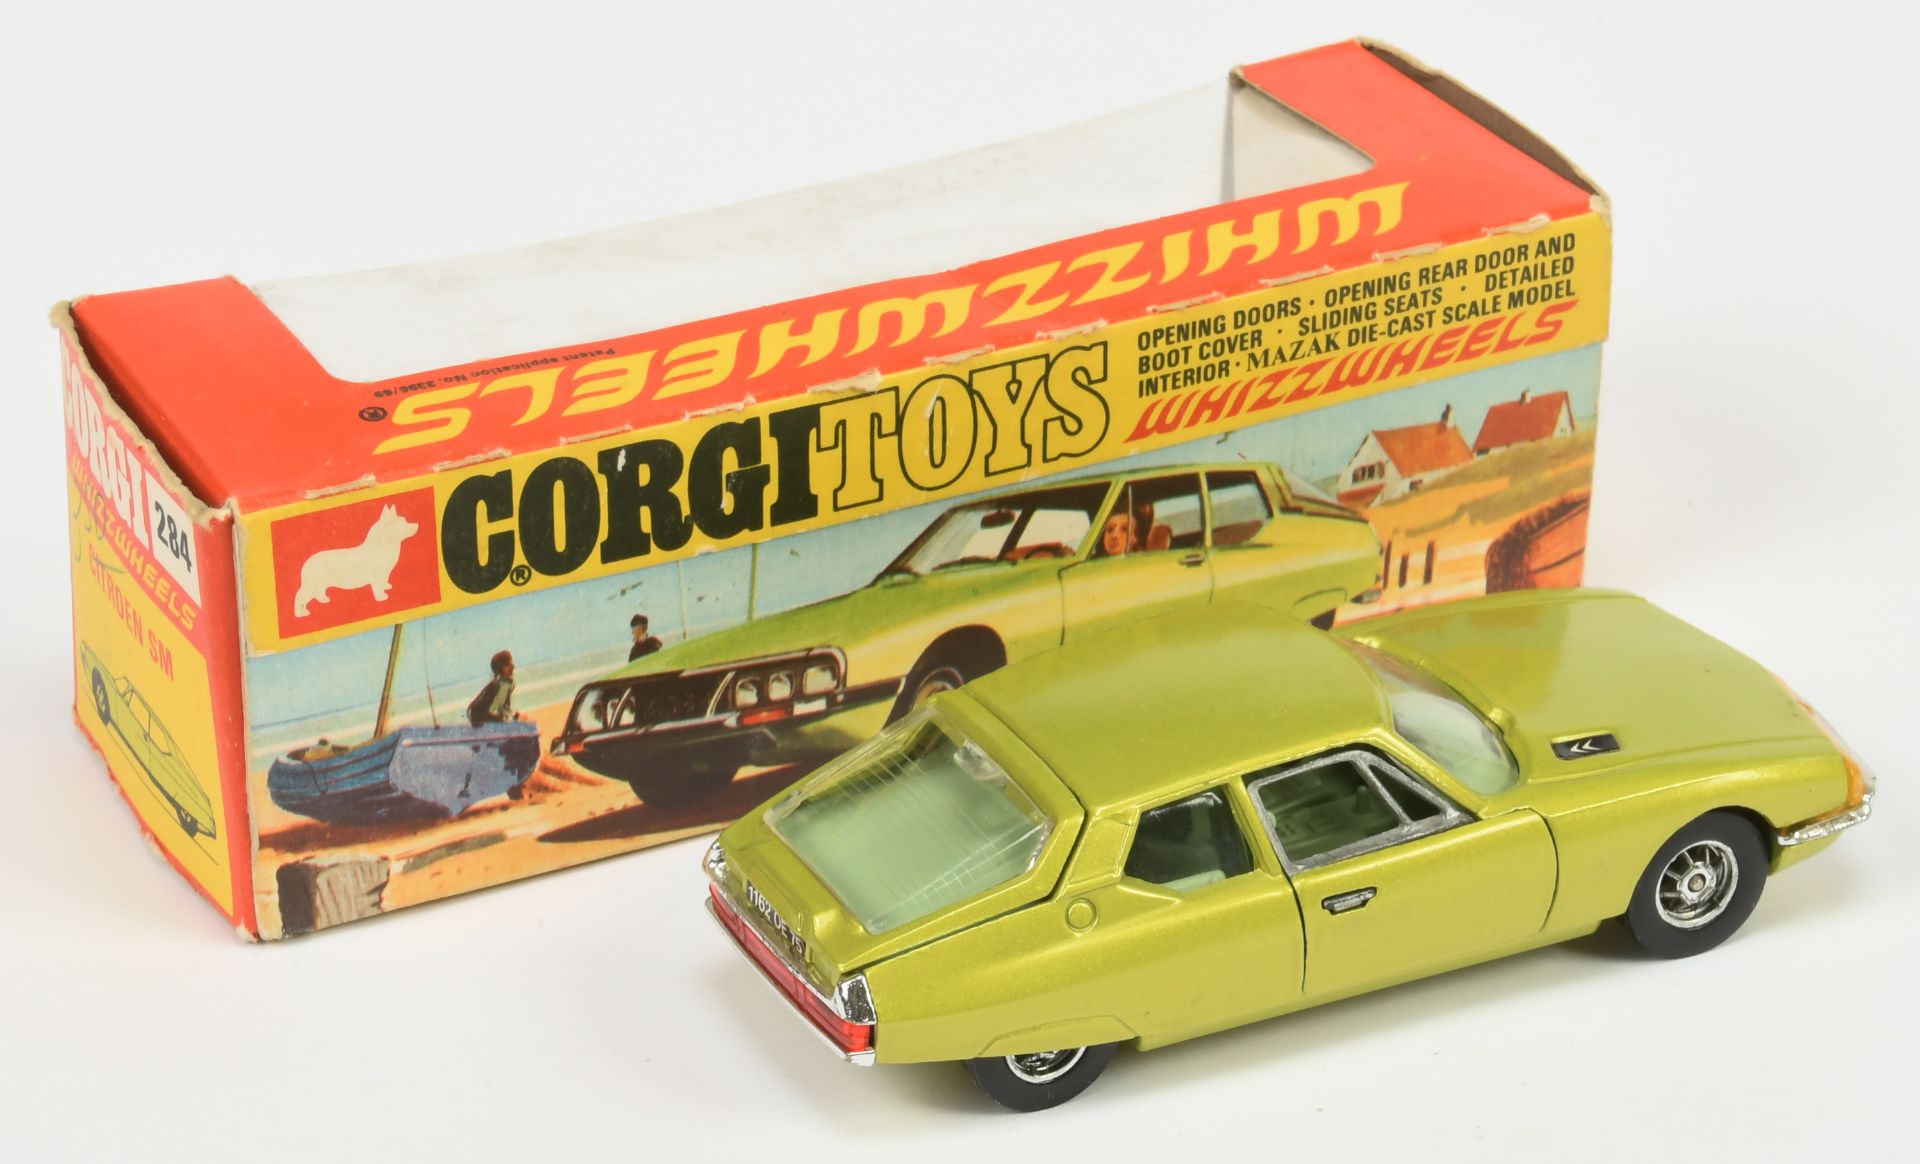 Corgi Toys Whizzwheels 284 Citroen SM - Metallic Lime body, pale green interior, chrome trim, spo... - Bild 2 aus 2